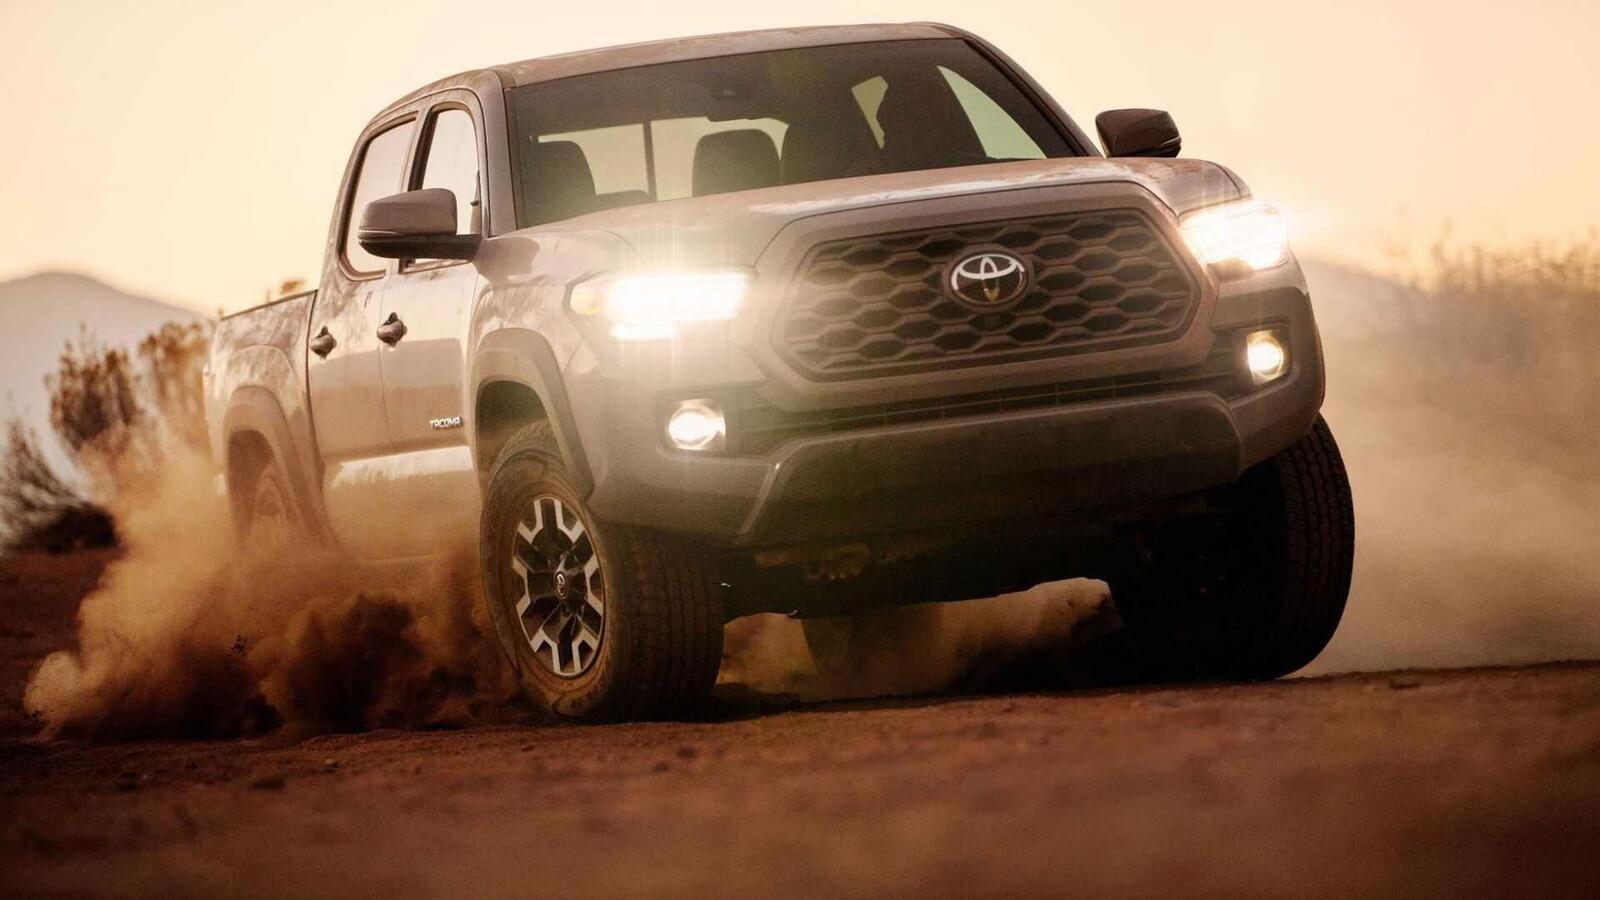 Xem trước bán tải Toyota Tacoma 2020 mới trước ngày ra mắt đối thủ đáng gờm Ford Ranger - Hình 3